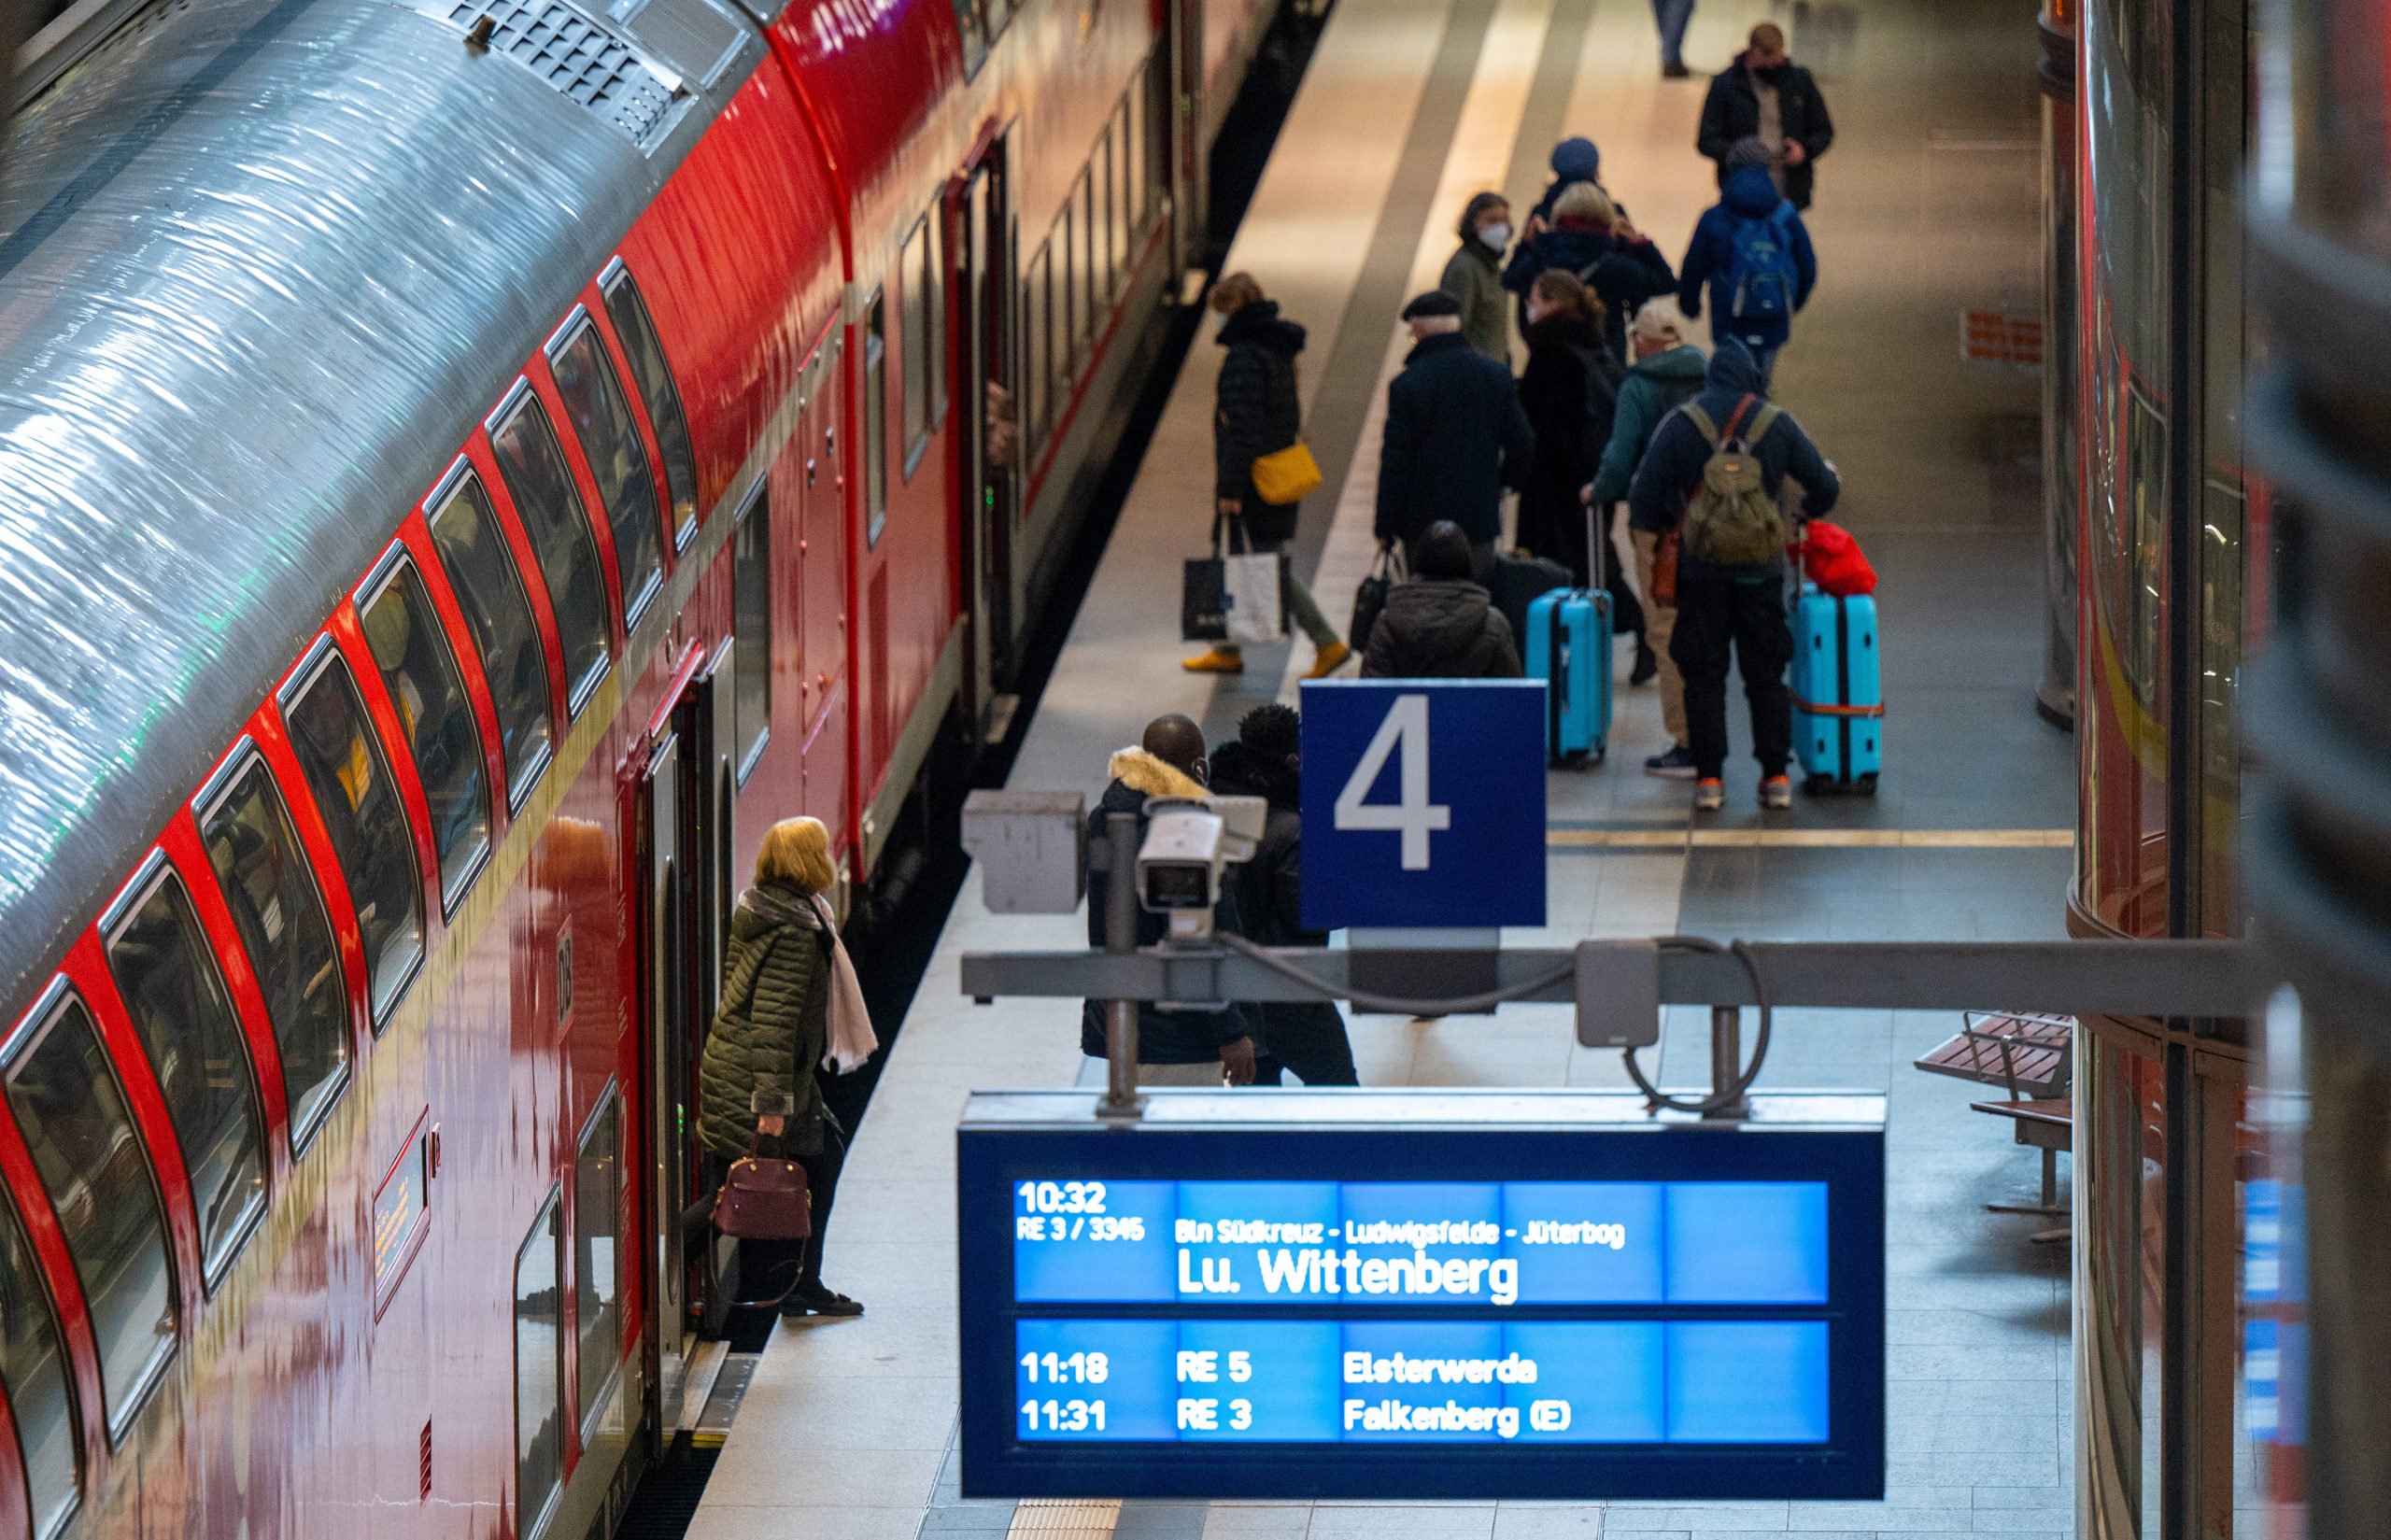 DIJELASKAN: Cara mendapatkan tiket perjalanan €9 di Berlin